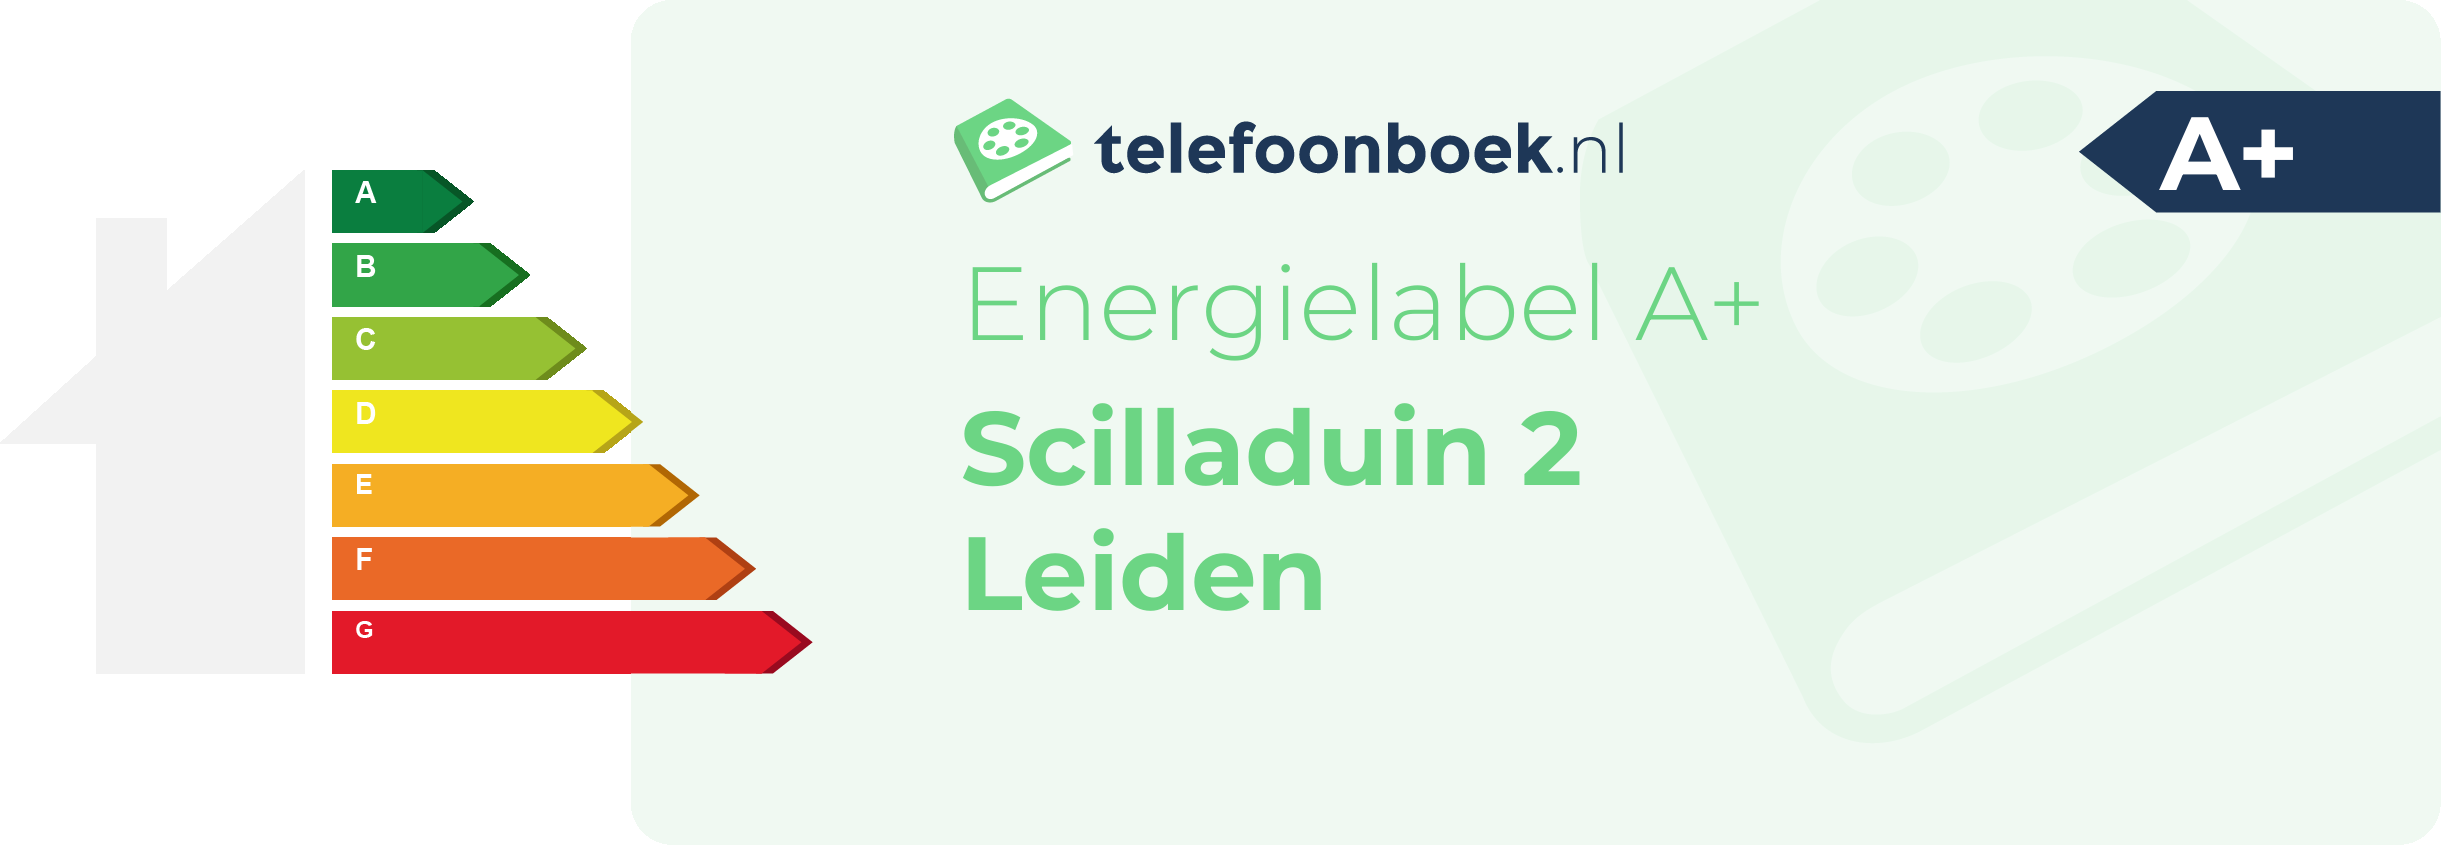 Energielabel Scilladuin 2 Leiden